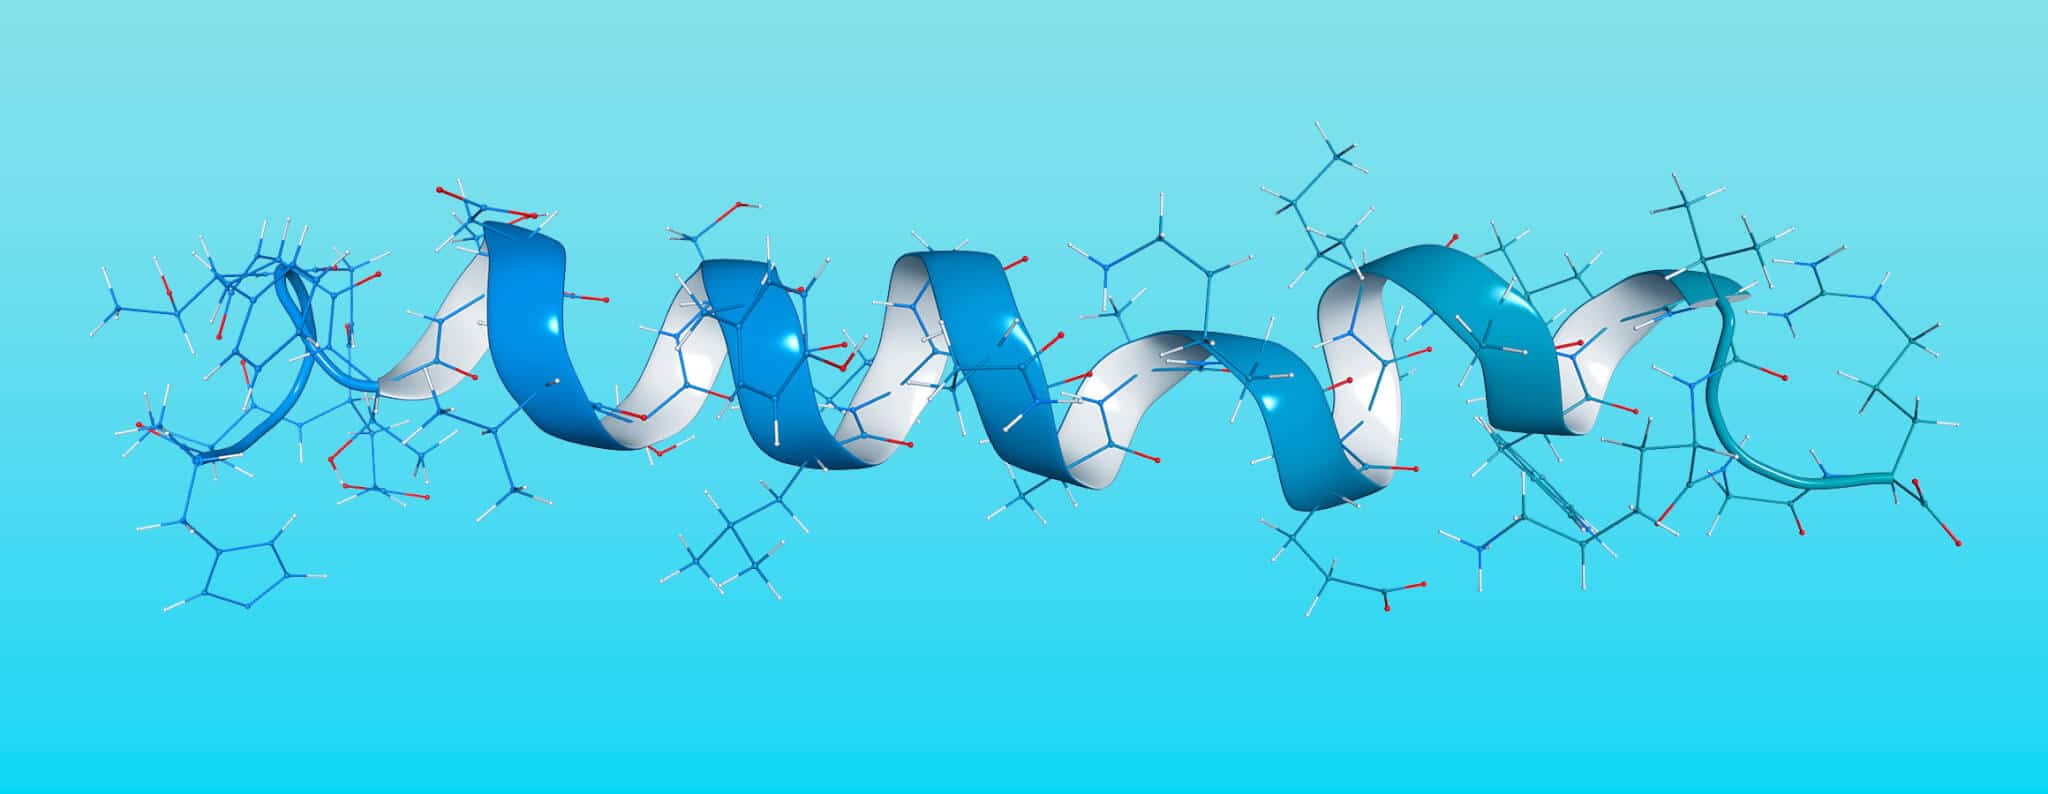 Modélisation 3D d'un ruban épais qui boucle, bleu d'un coté et blanc de l'autre, et duquel parte des molécules.